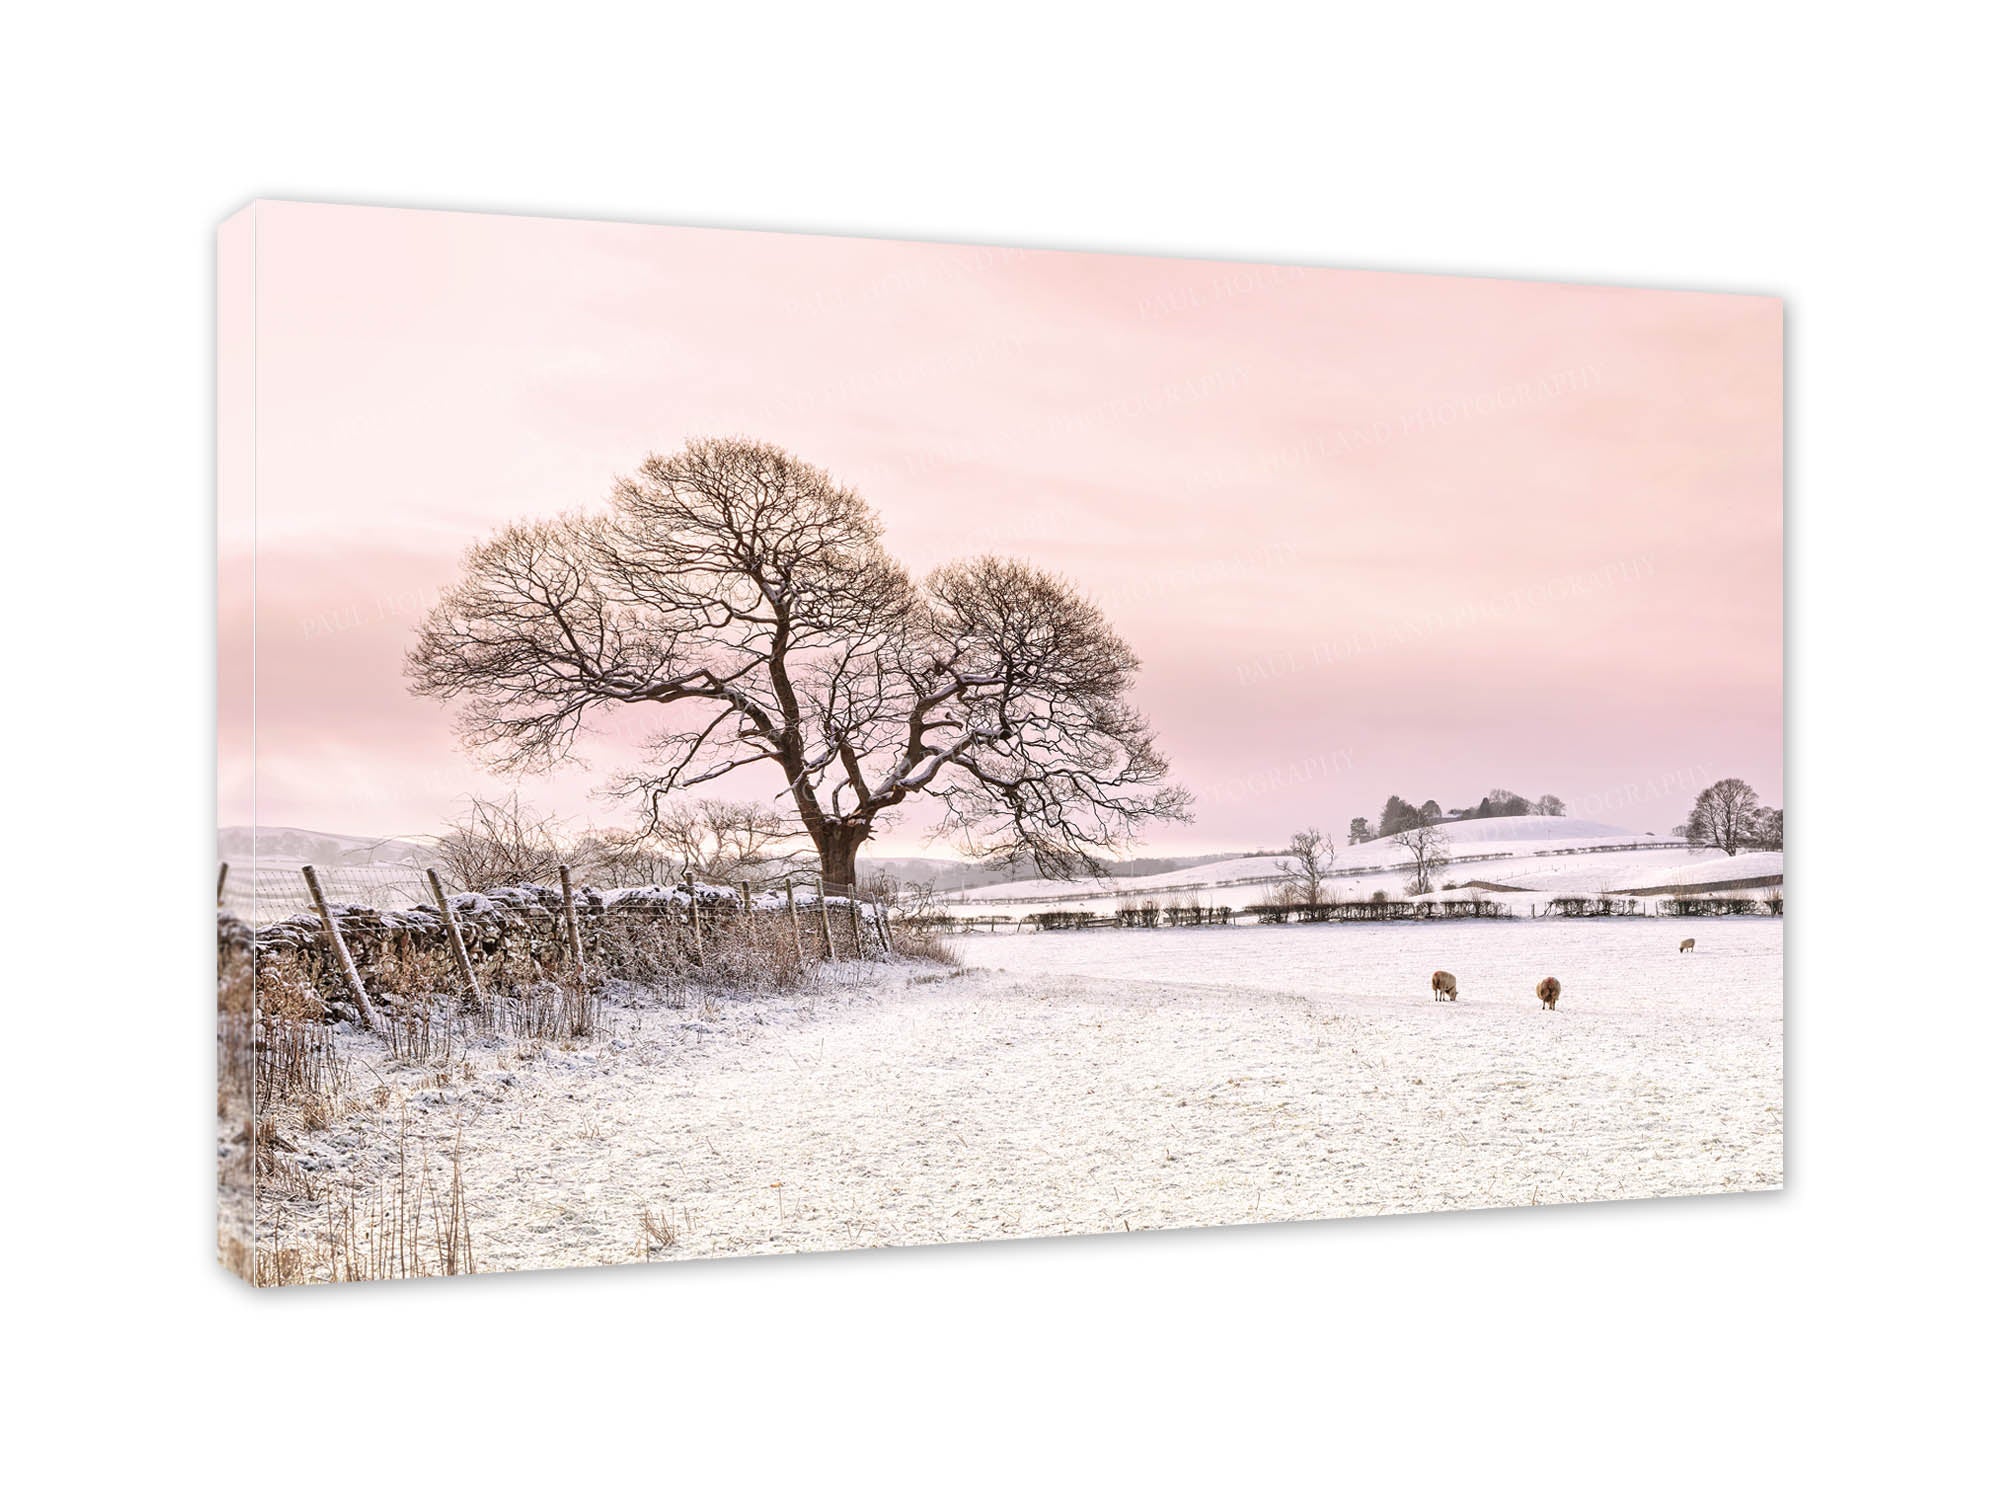 Winter snow on fields near Kendal, Wall Canvas